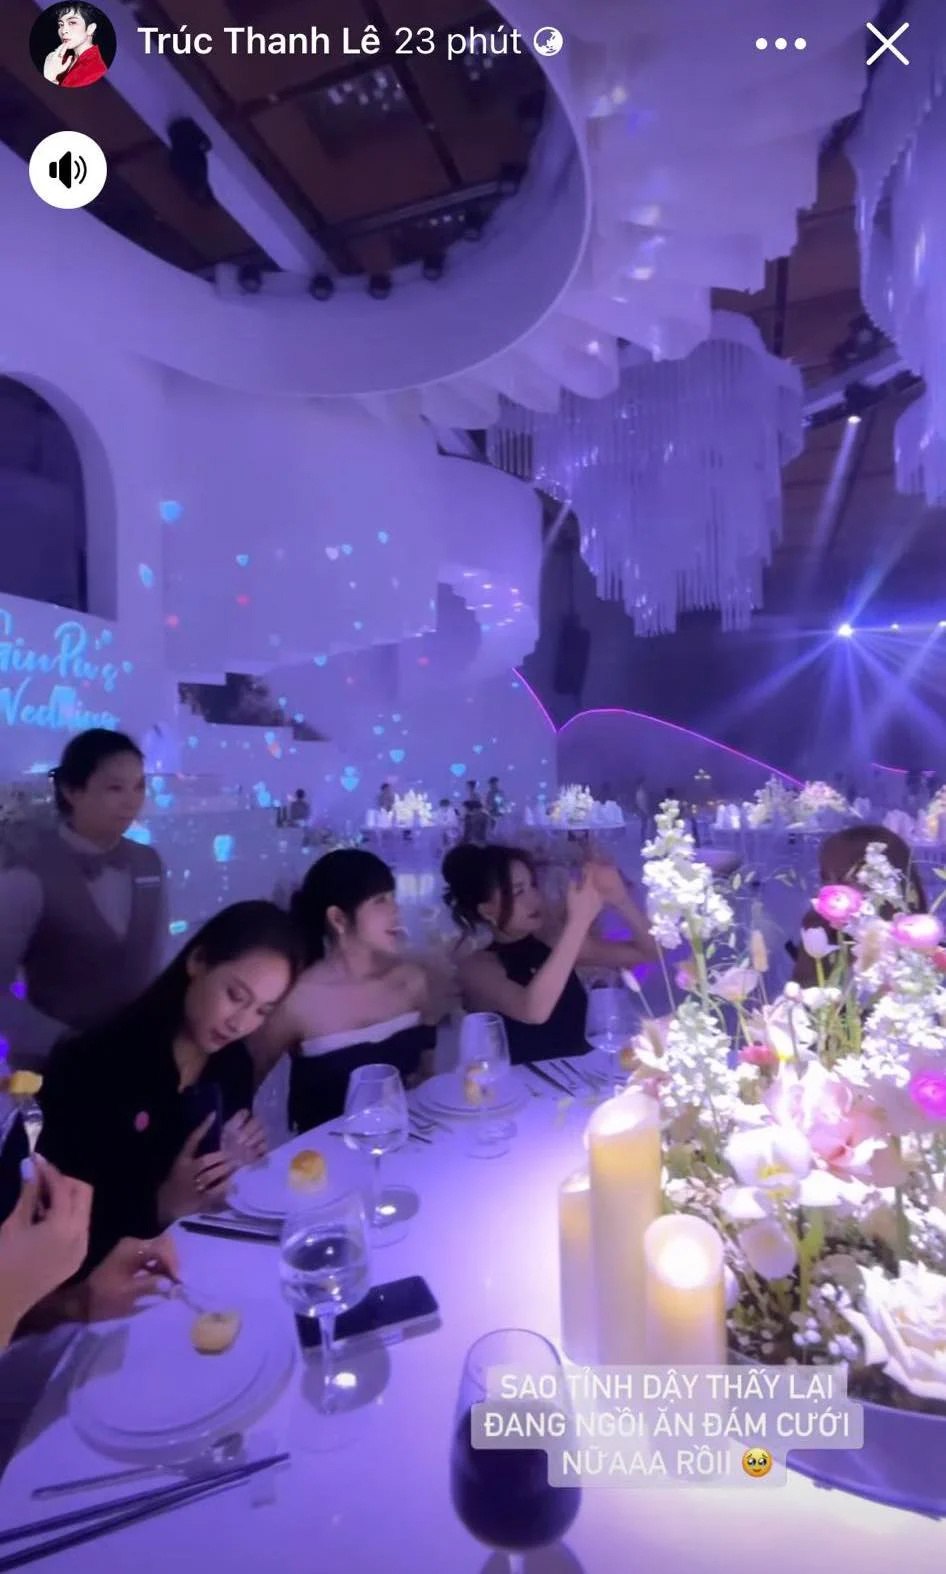 Puka - Gin Tuấn Kiệt chính thức lộ diện trong đám cưới ở TP.HCM: Cô dâu khoe vai trần, tình tứ bên cạnh chú rể - ảnh 6